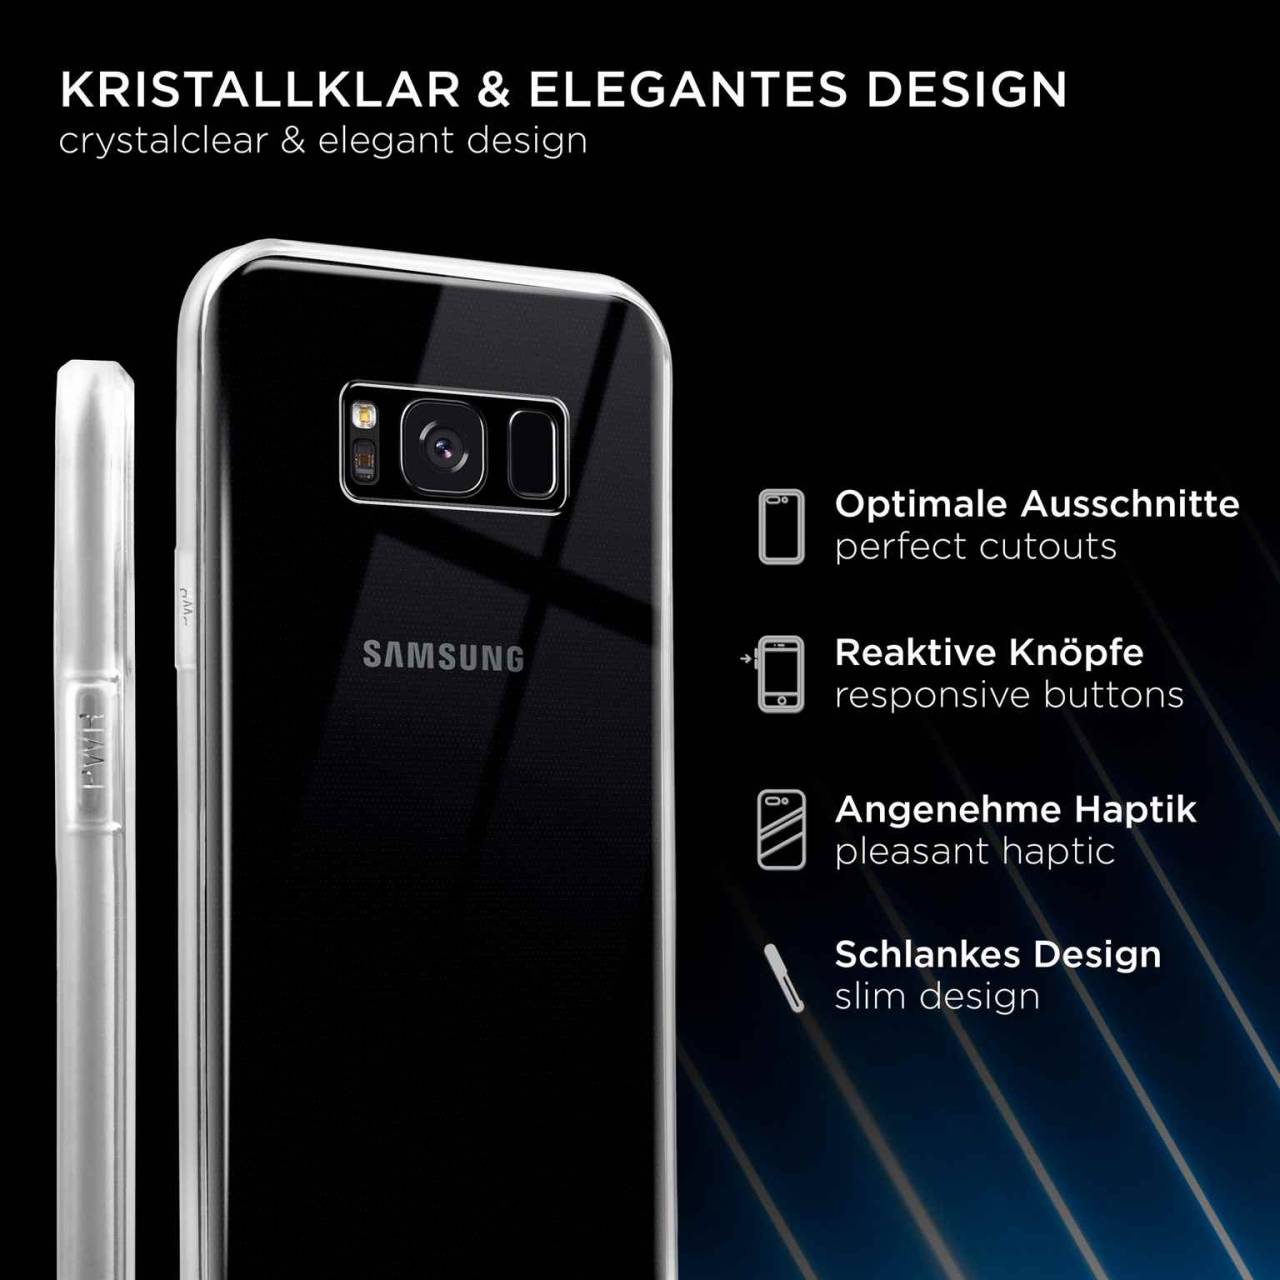 ONEFLOW Clear Case für Samsung Galaxy S8 Plus – Transparente Hülle aus Soft Silikon, Extrem schlank